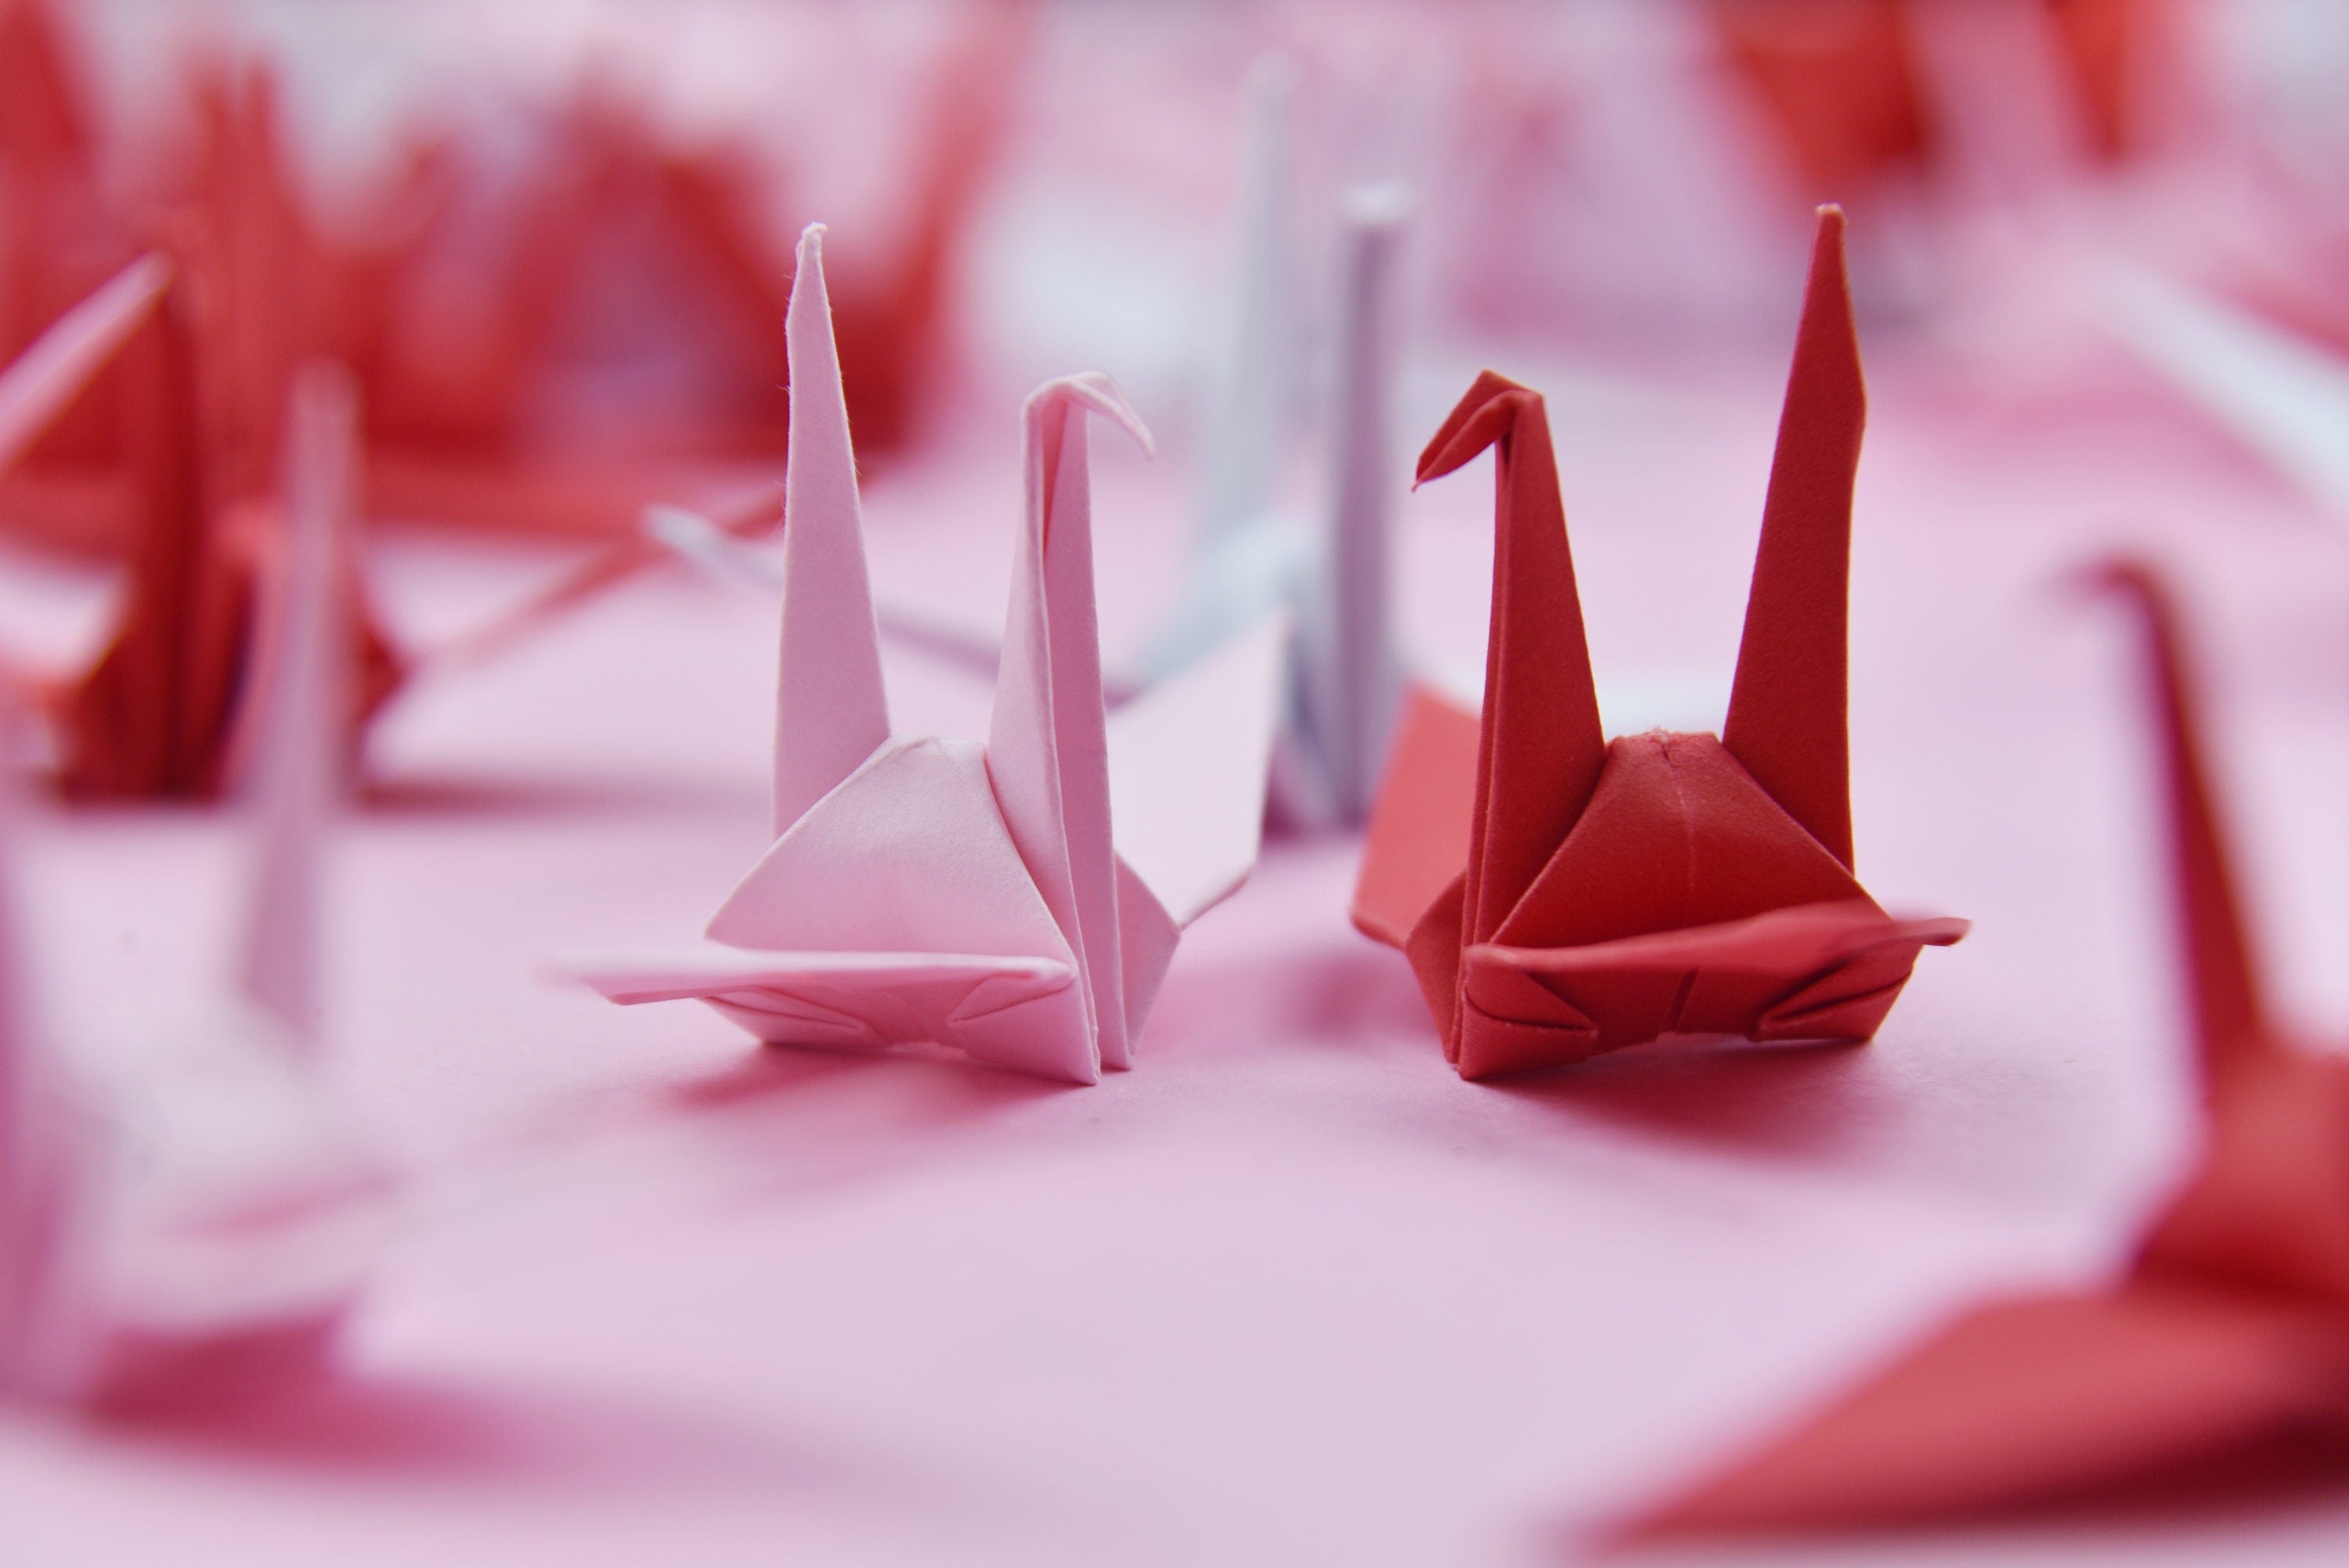 100 Grúas de papel Origami - Sombra roja rosa - 3x3 pulgadas - Plegable hecho a mano para decoración de bodas, Boda japonesa, San Valentín